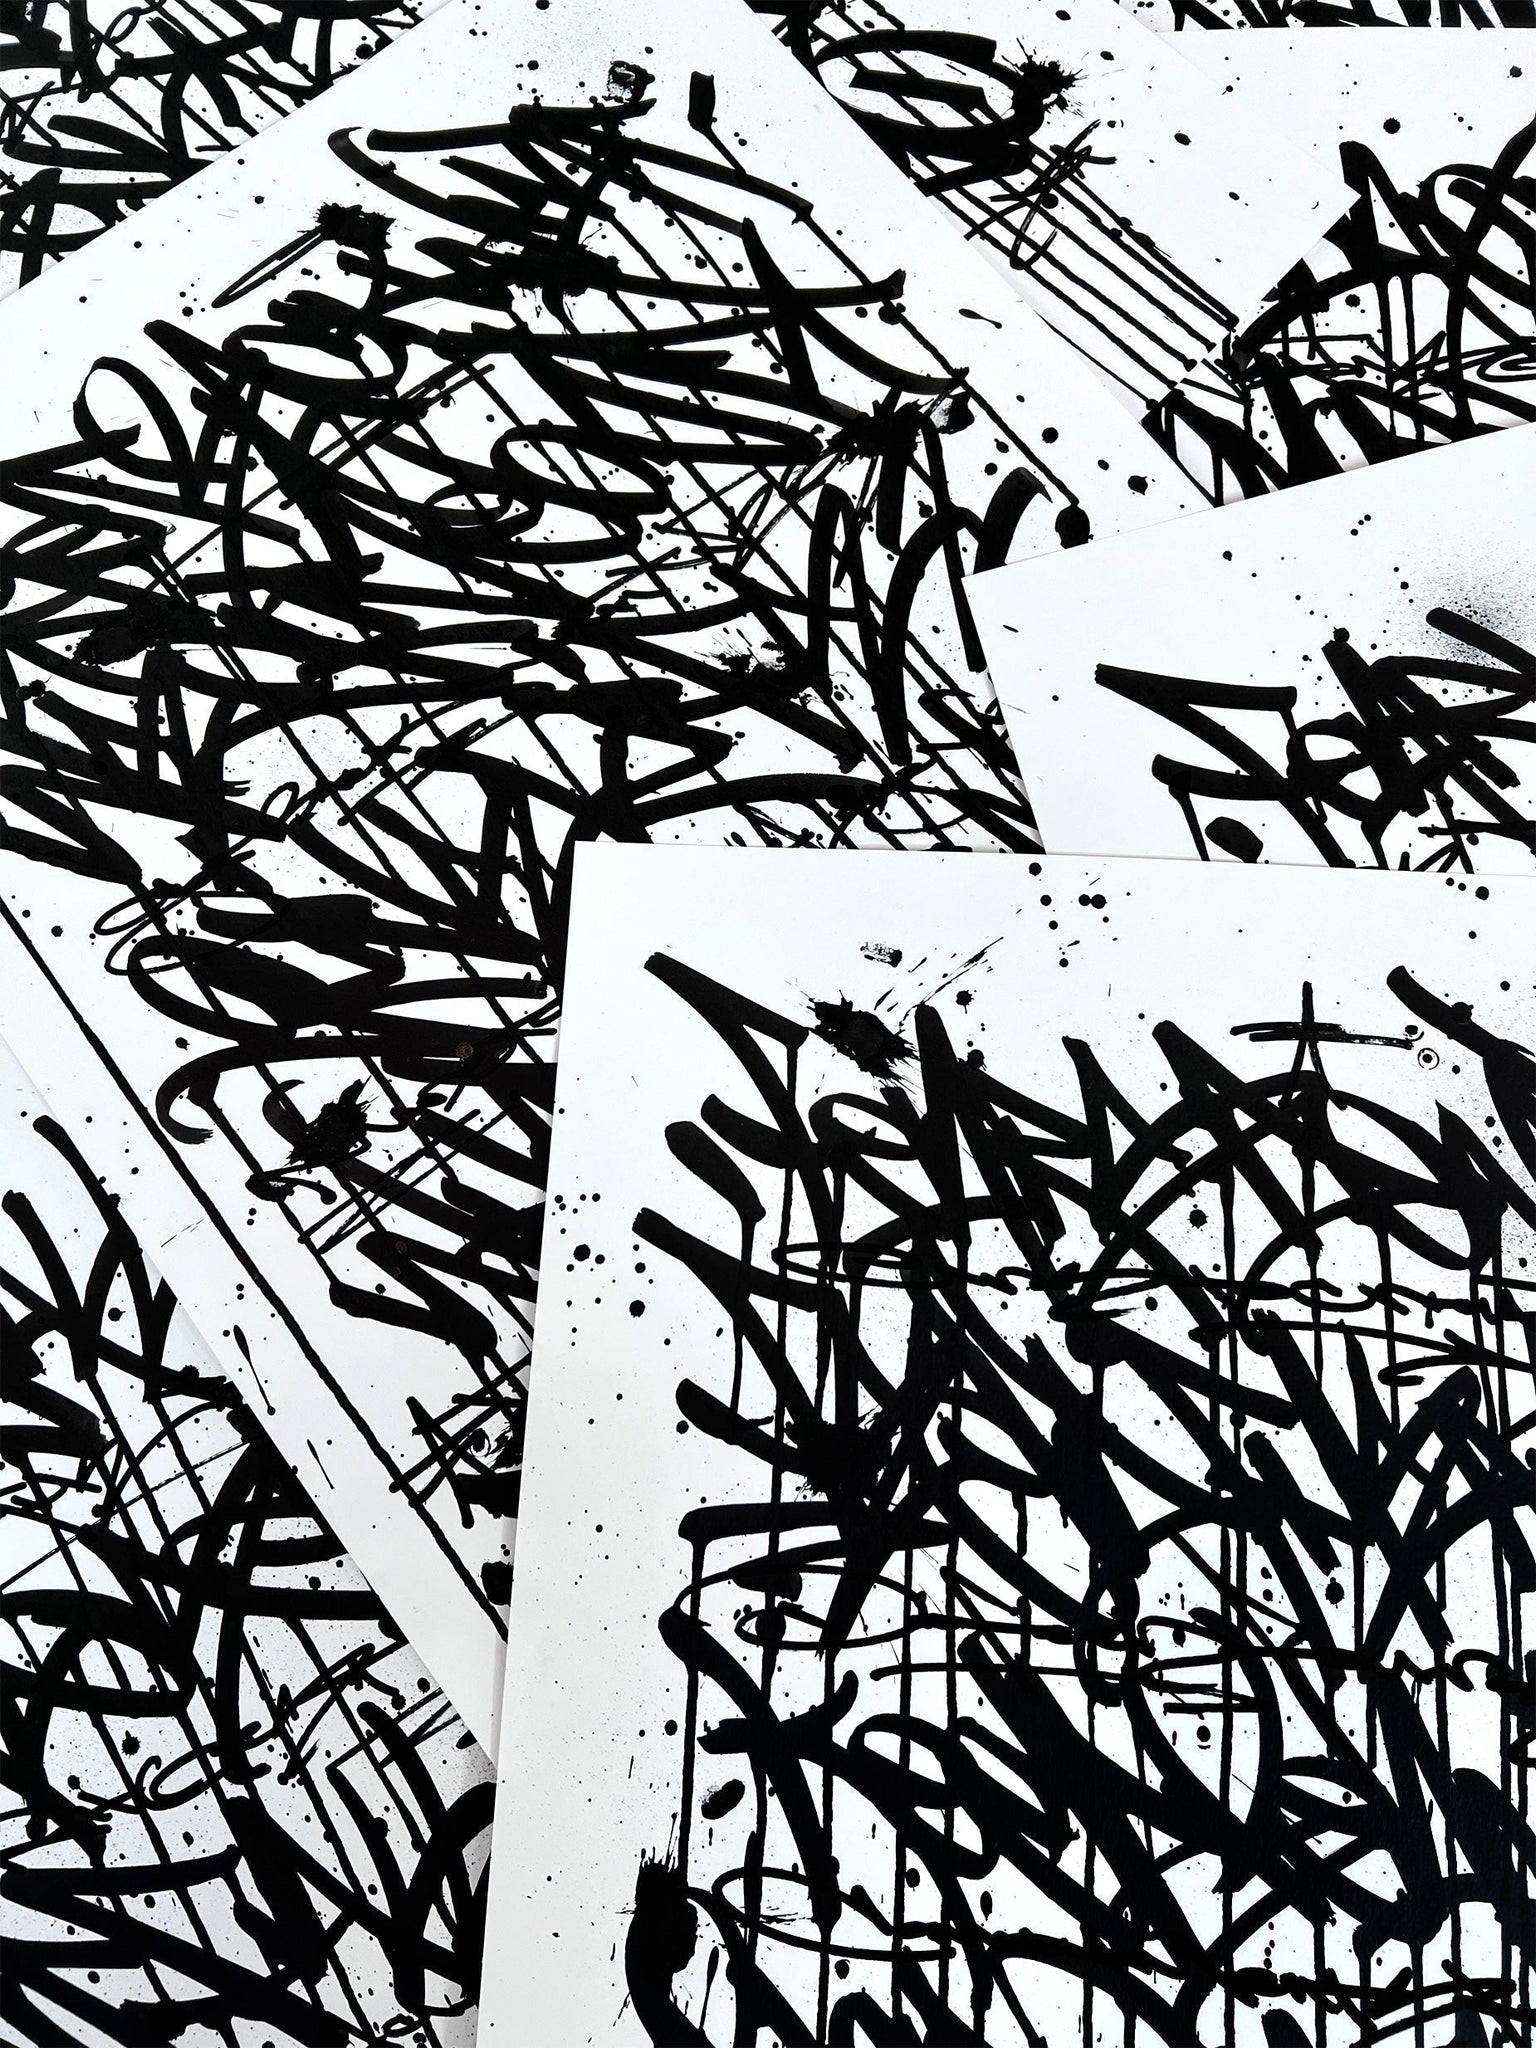 Fear Less Live More 04 - original on paper 50 x 70 cm